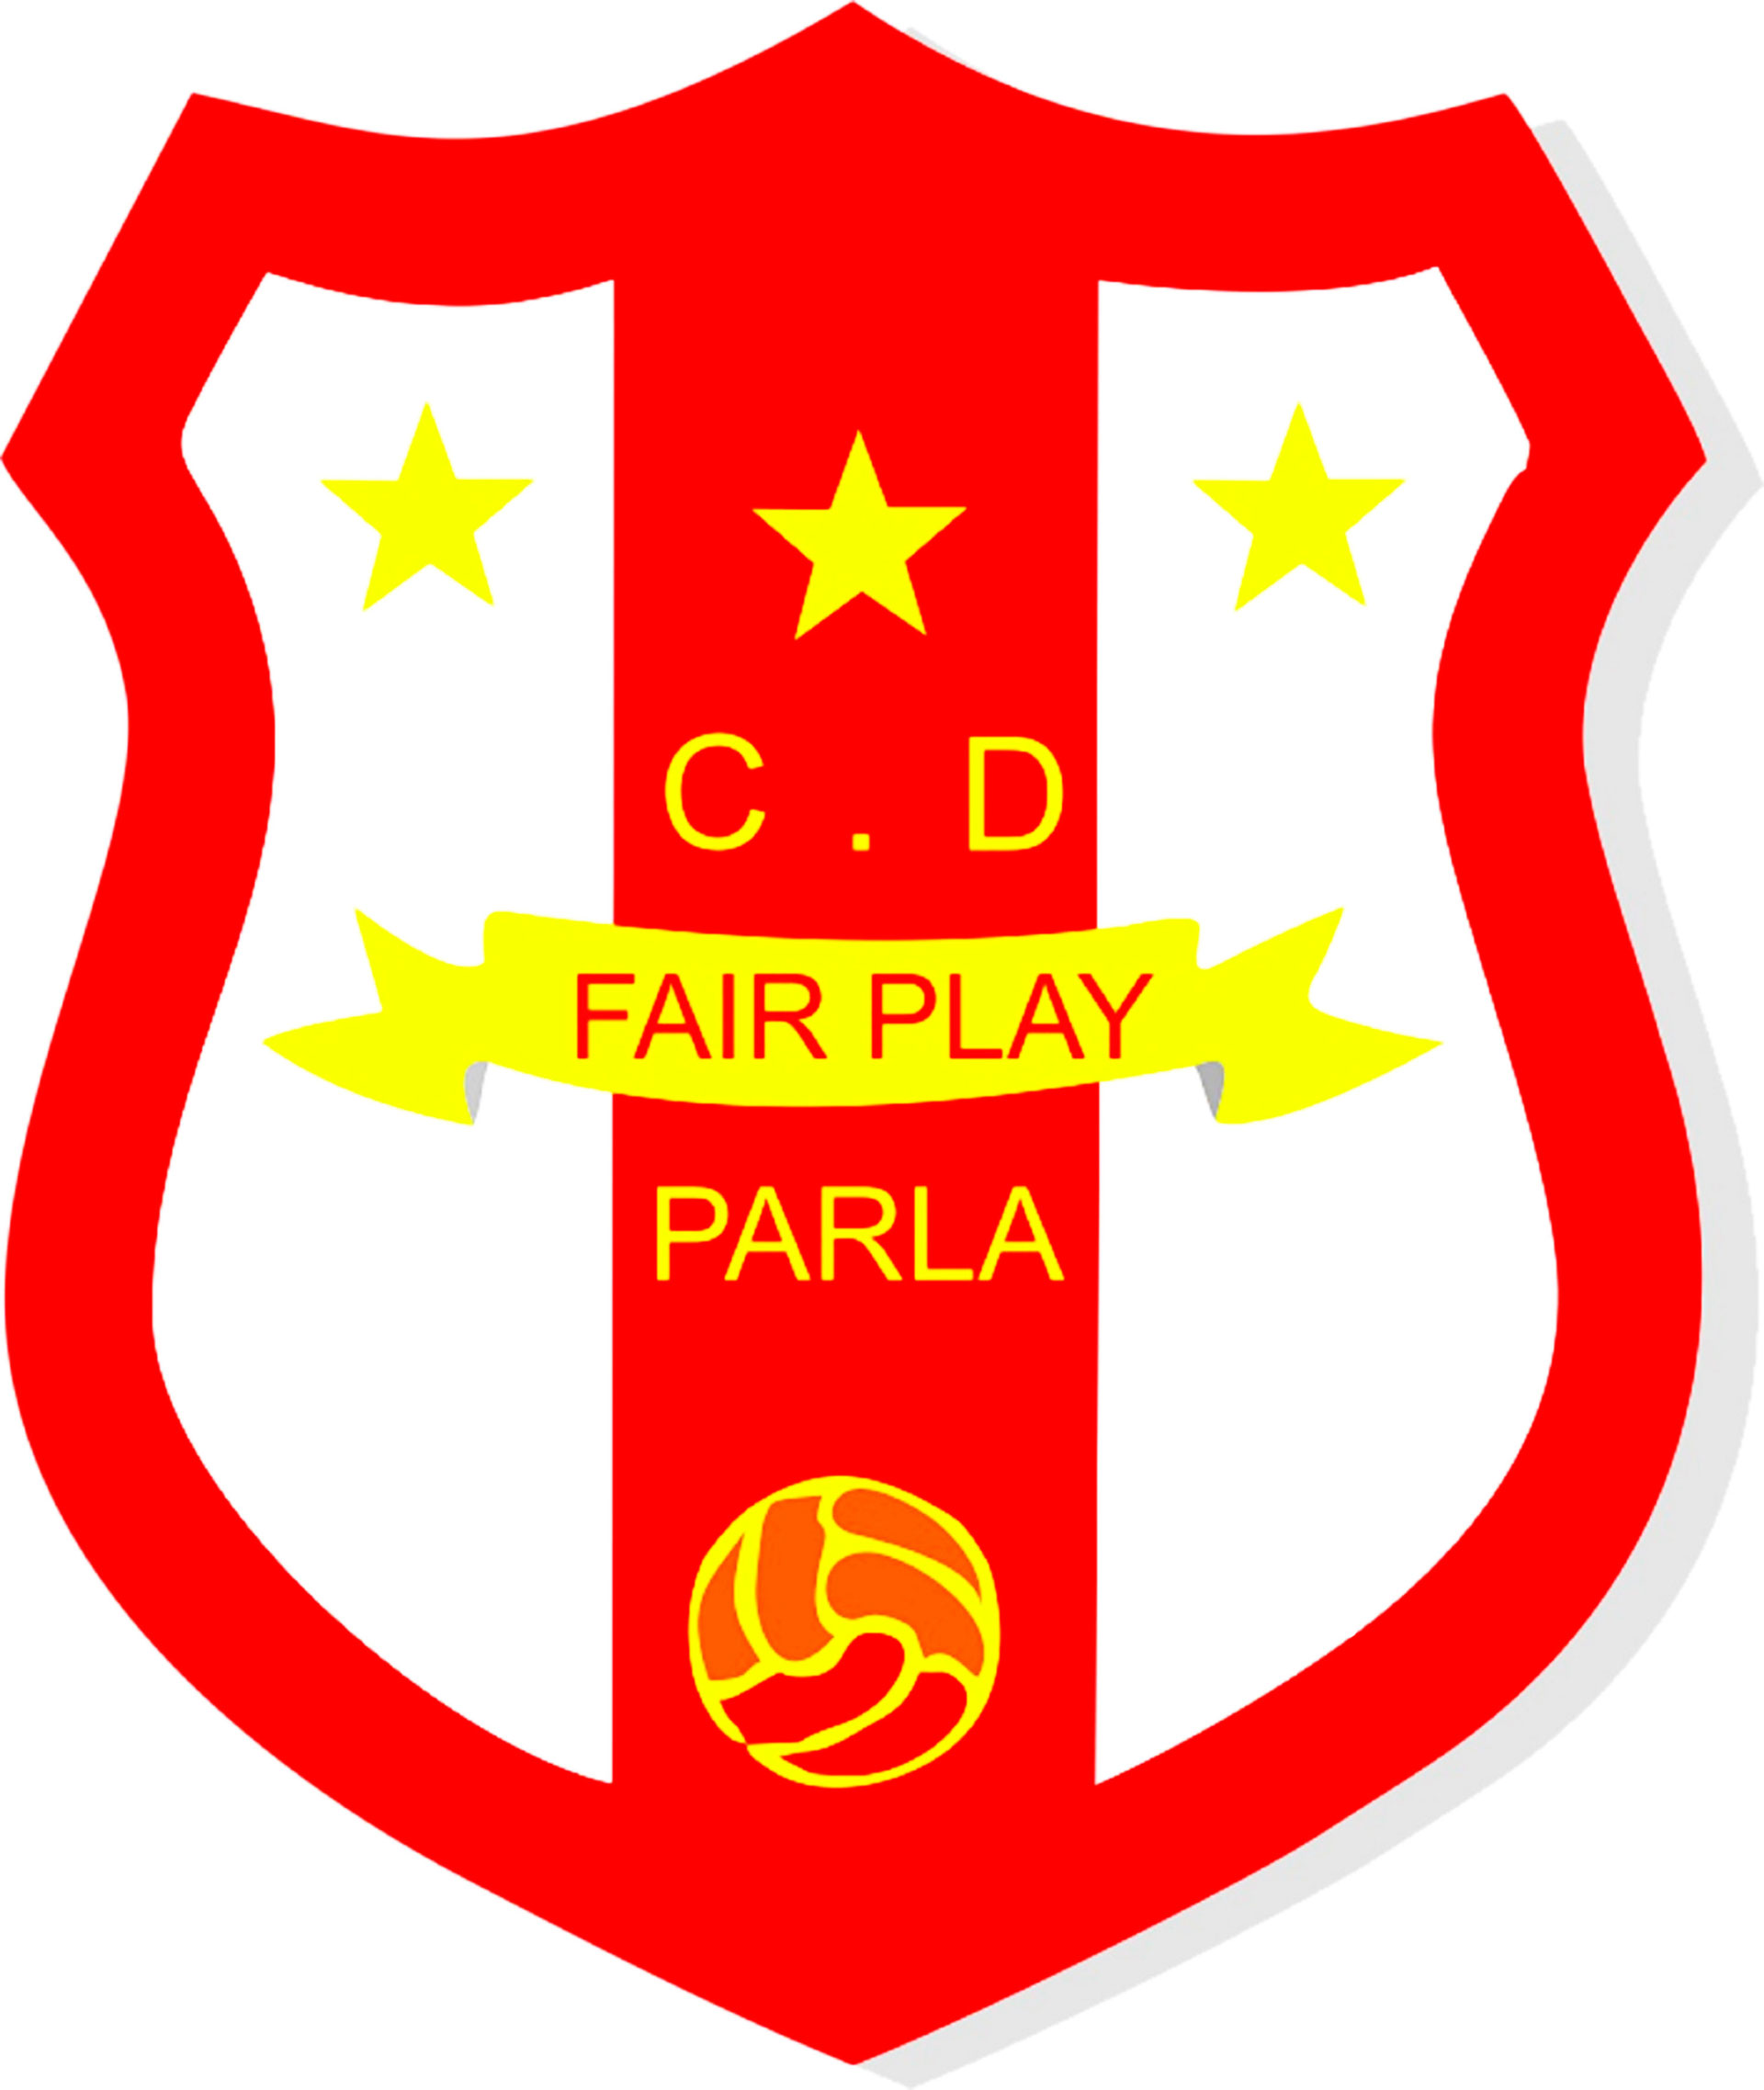 C.D. FAIR PLAY "A"